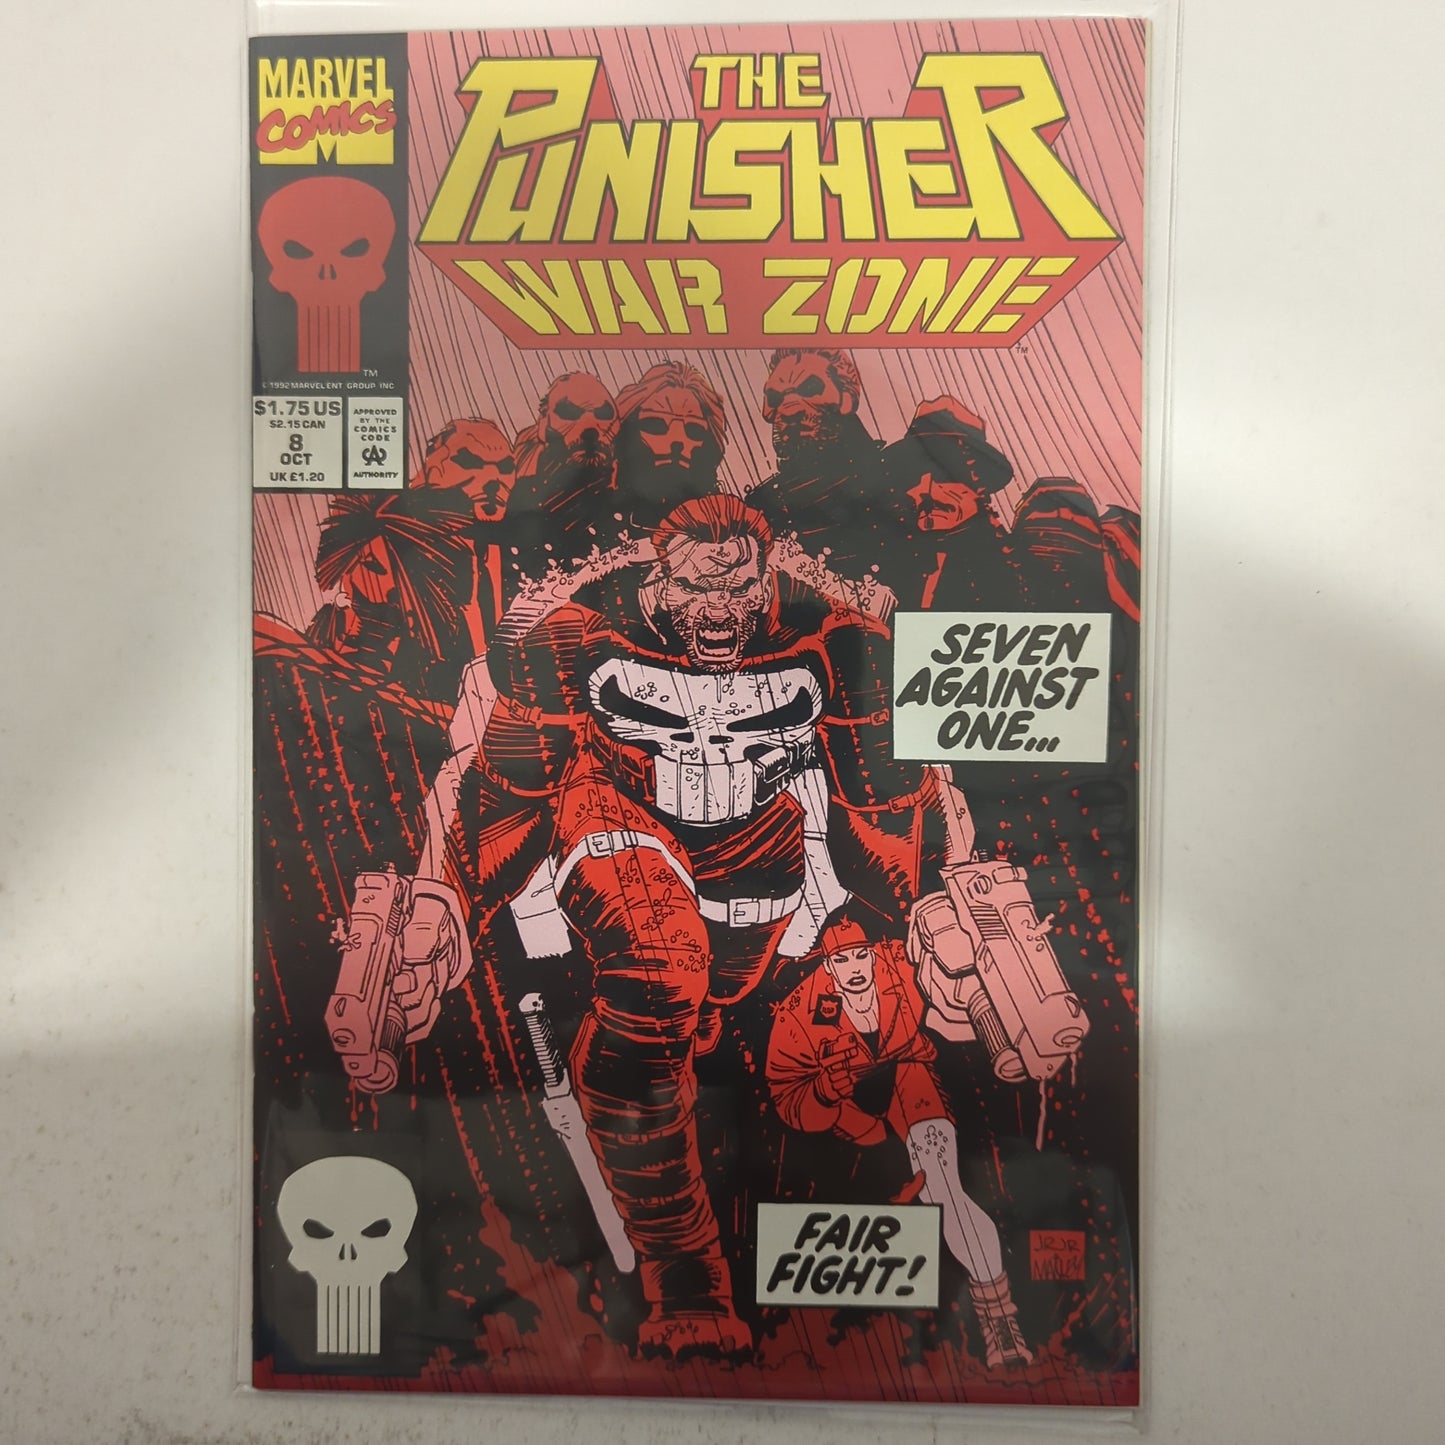 The Punisher War Zone #8